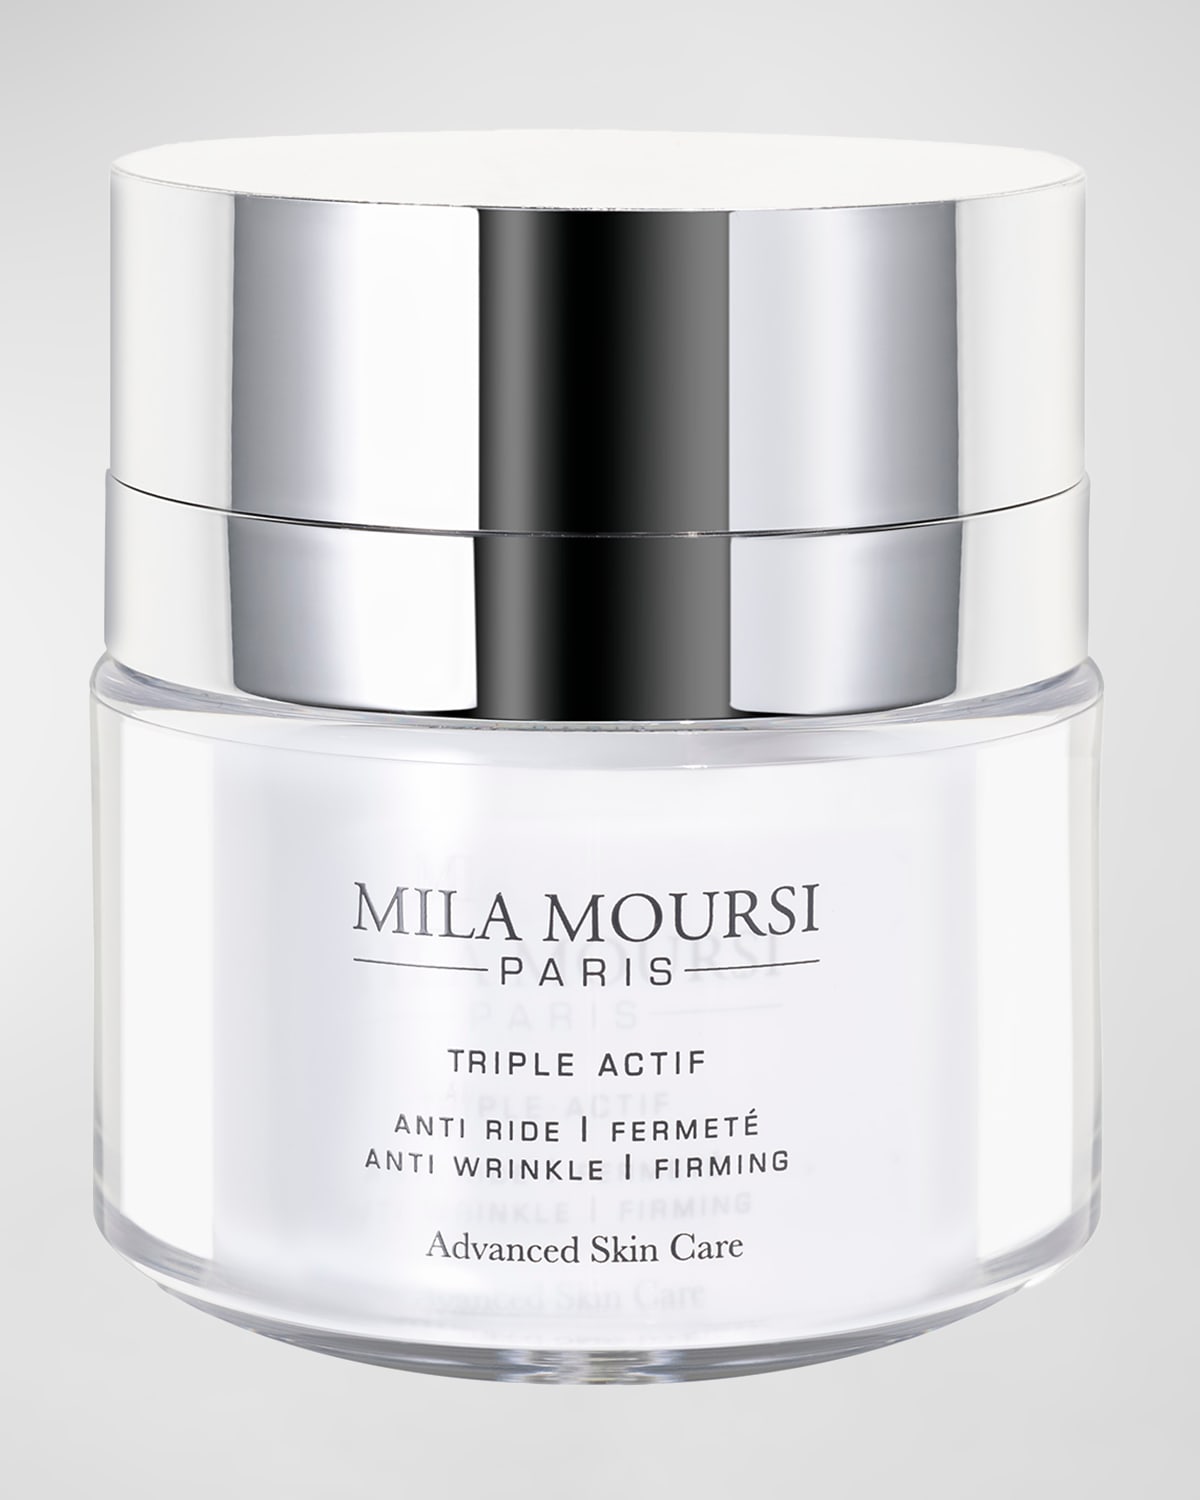 Mila Moursi Triple Actif Anti-Wrinkle Firming Cream, 1.7 oz.